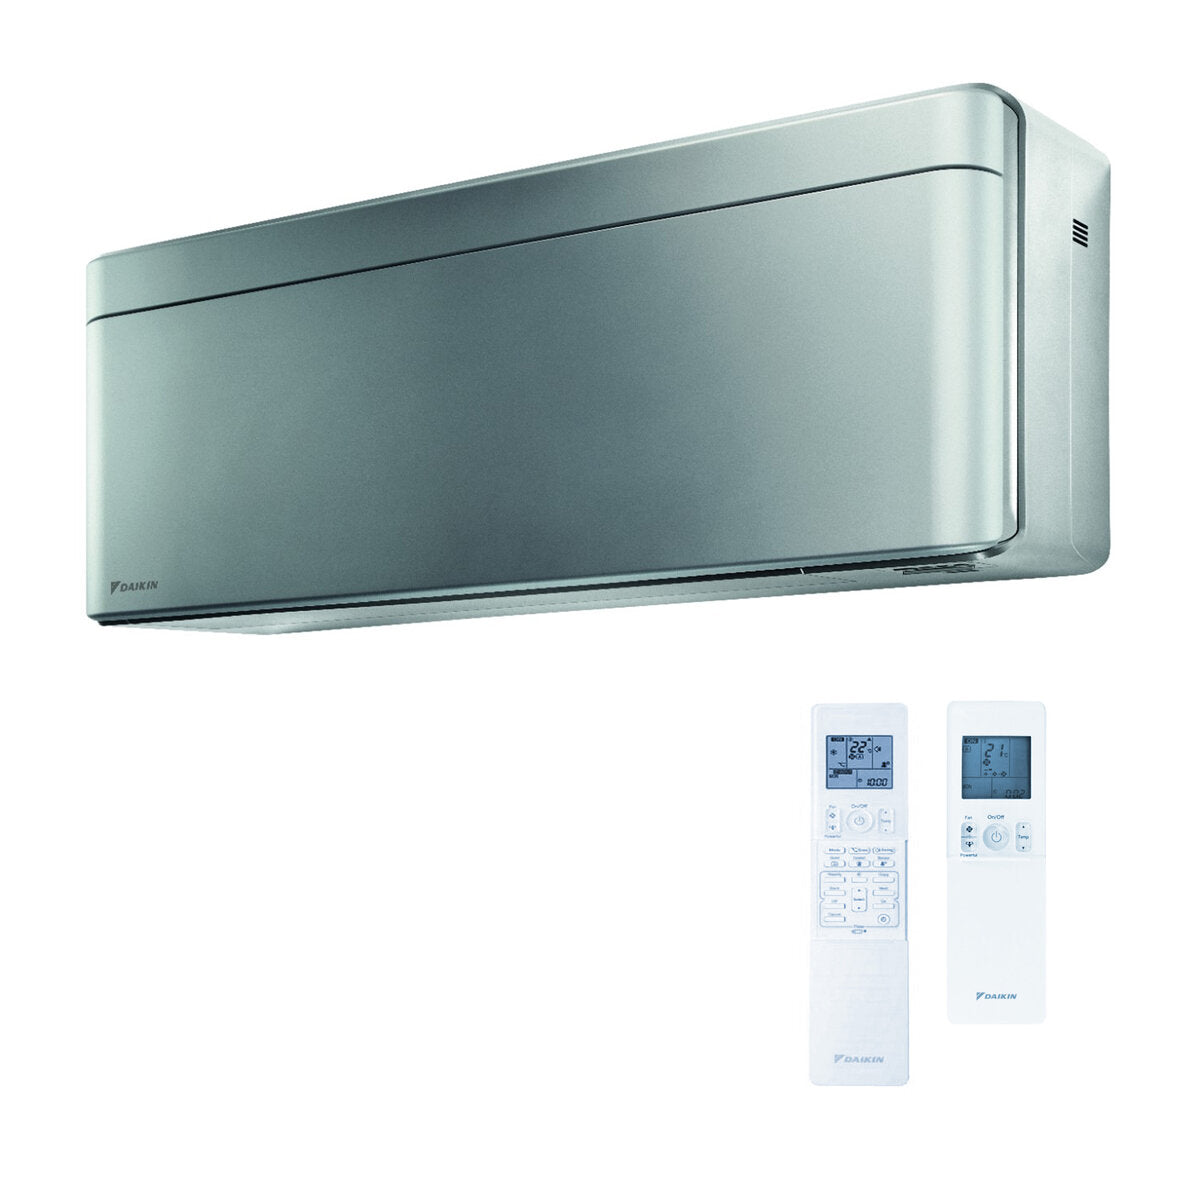 Daikin Stylish trial split air conditioner 9000 + 9000 + 15000 BTU inverter A ++ wifi outdoor unit 6,8 kW